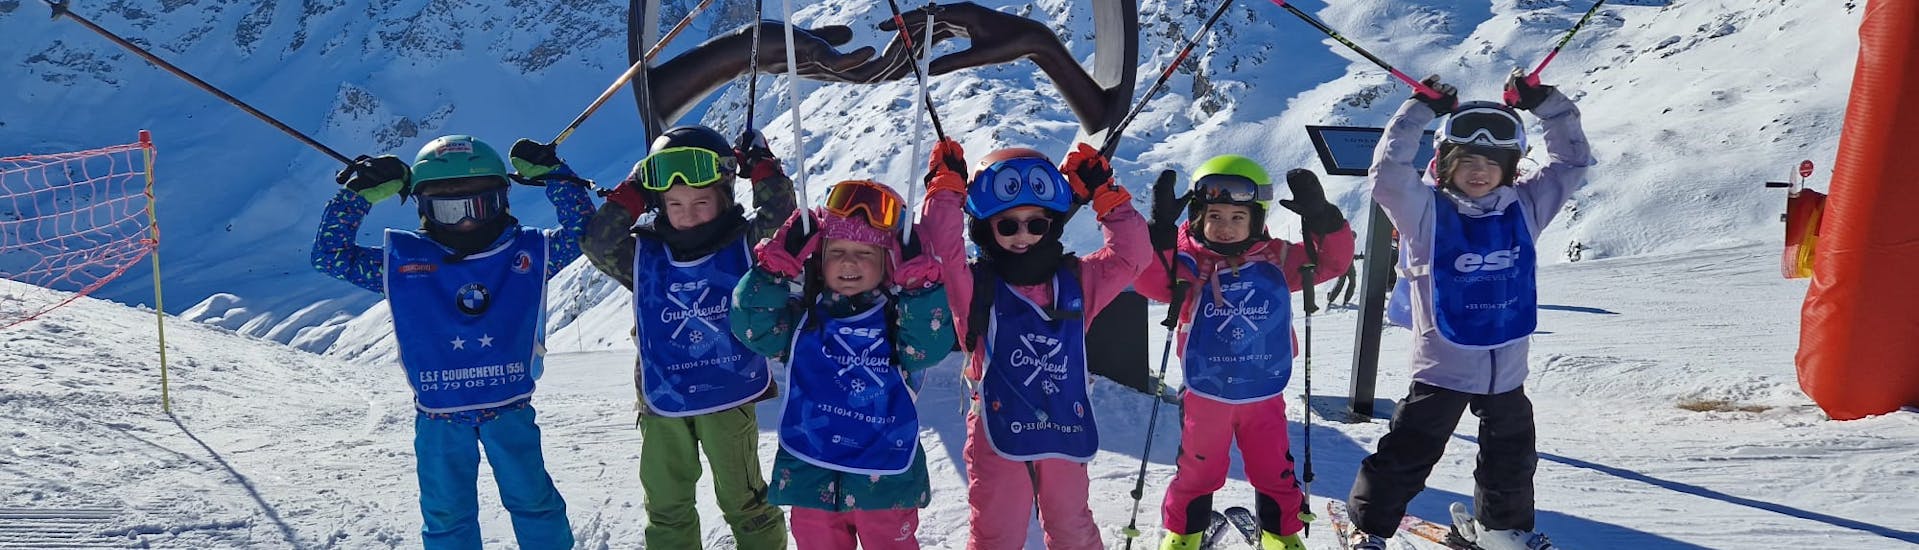 Lezioni di sci per bambini (6-12 anni).